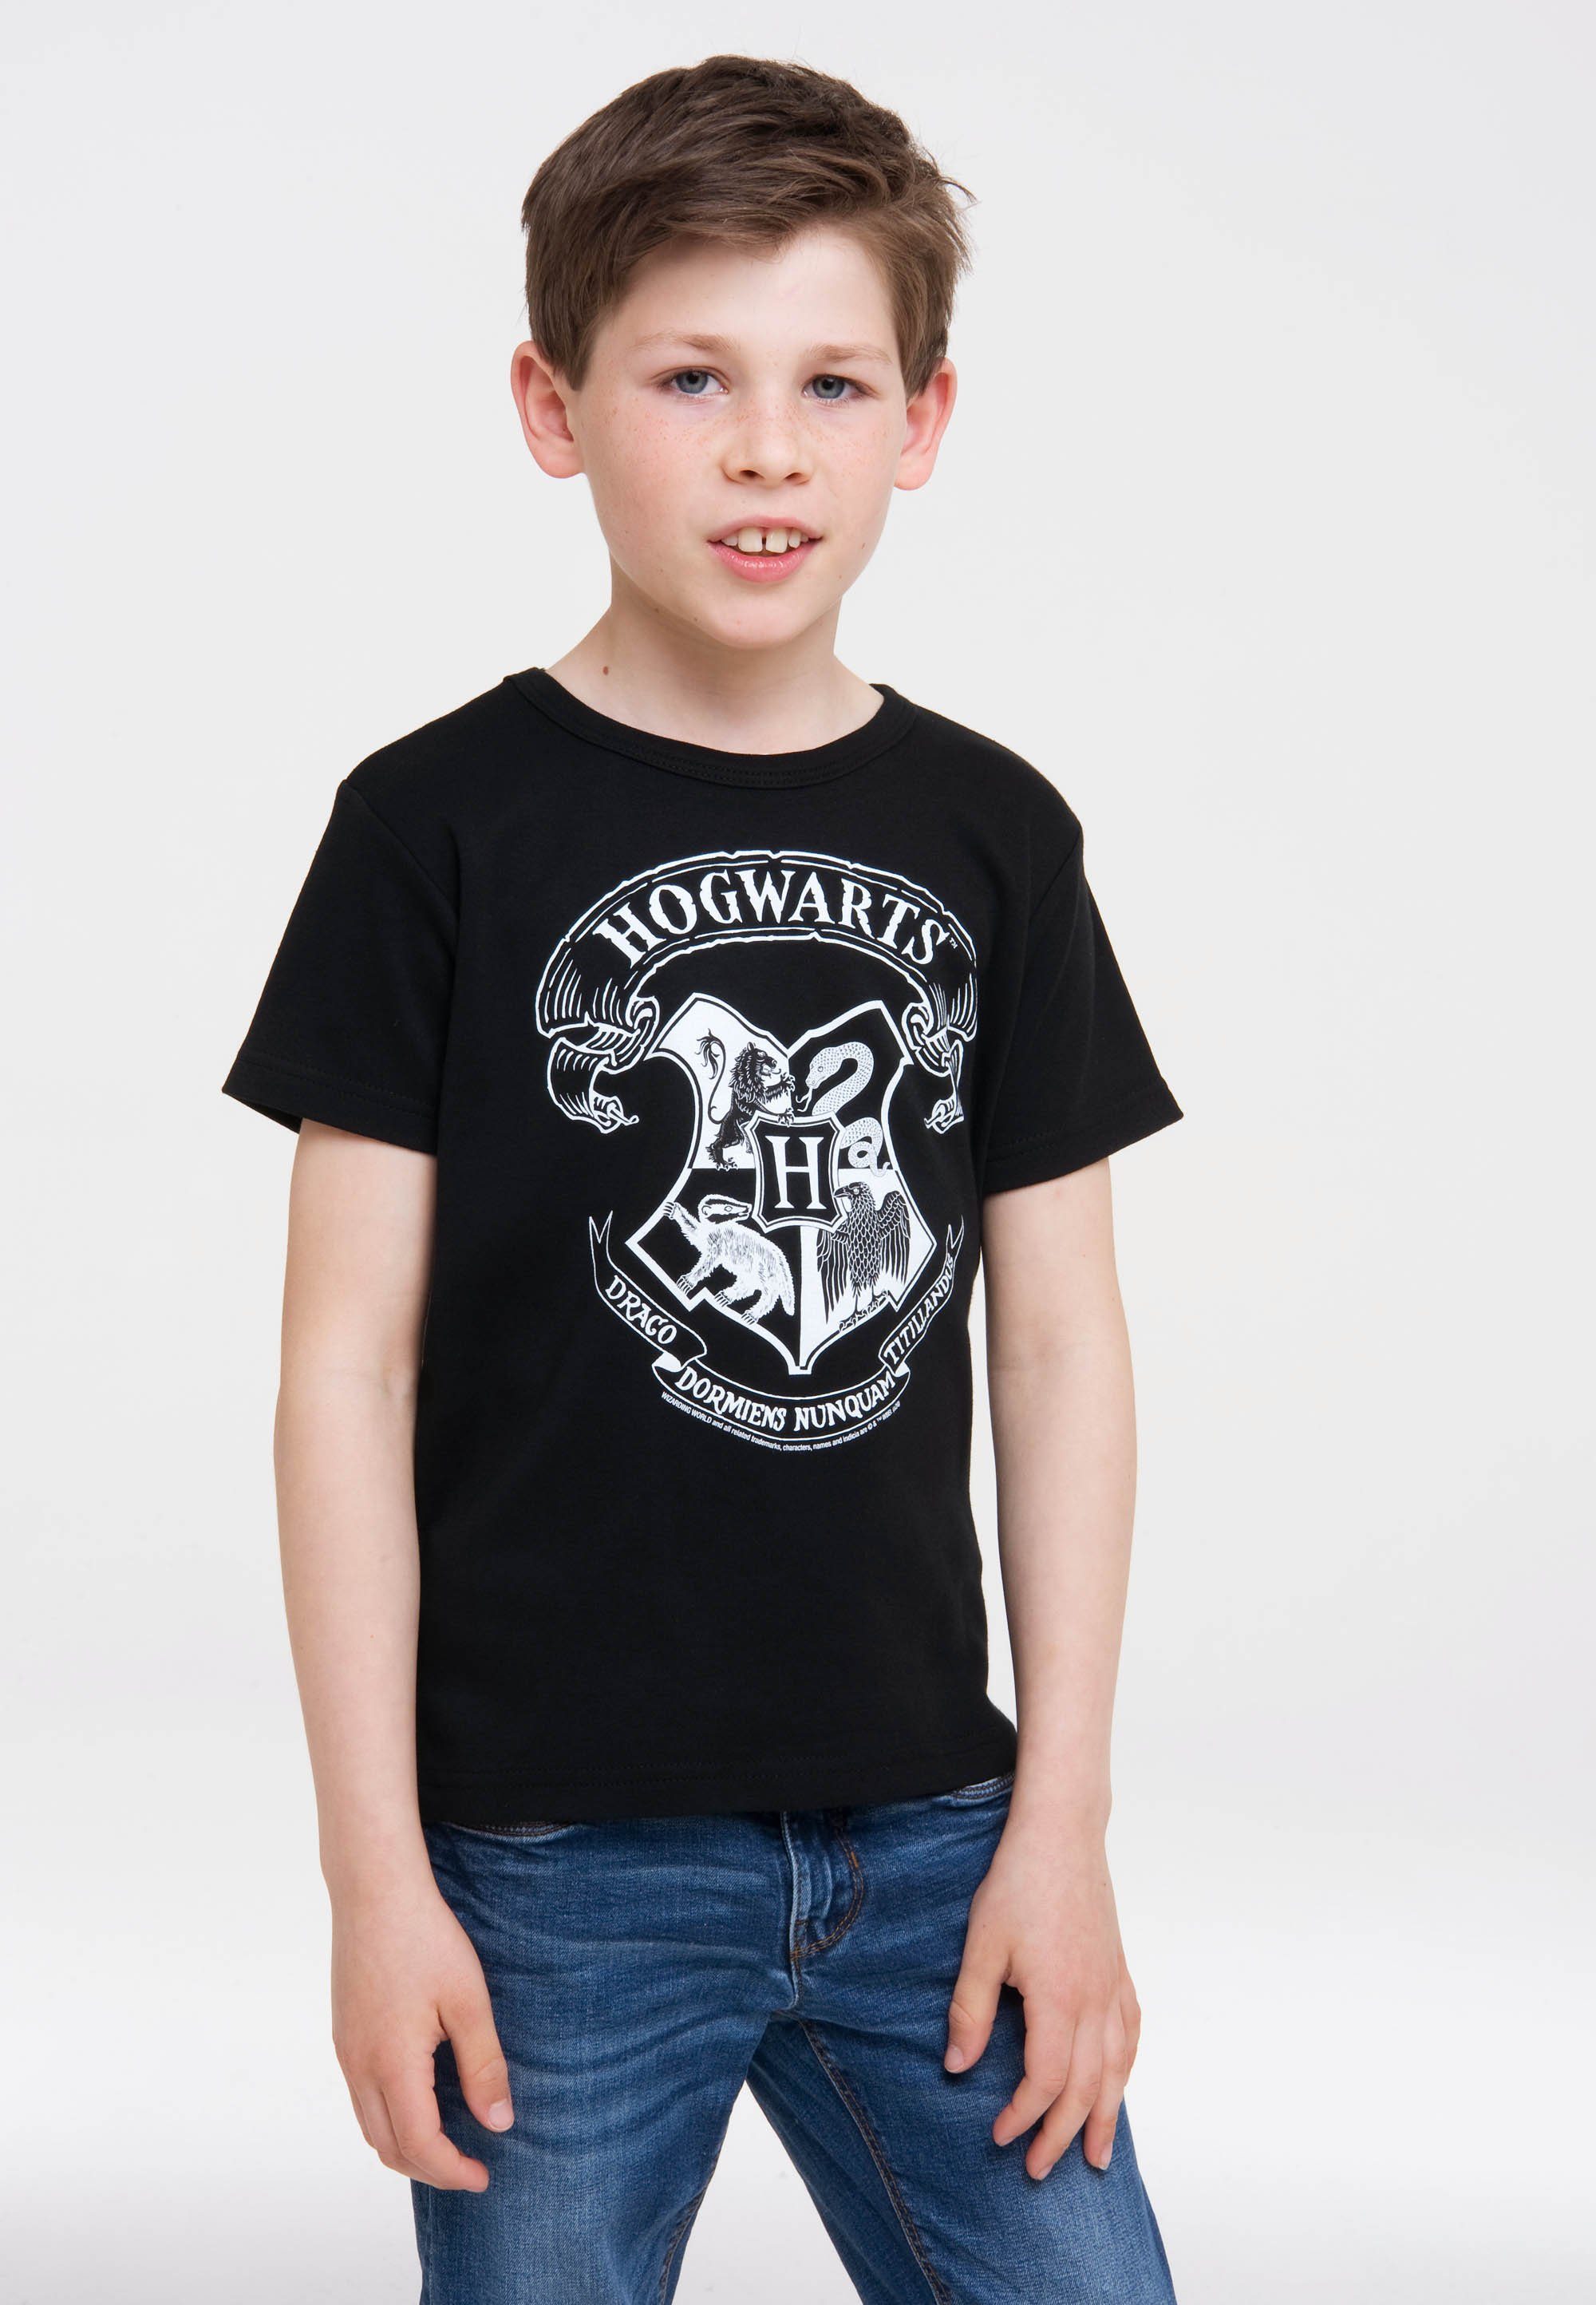 Potter LOGOSHIRT Hogwarts Originaldesign Logo lizenziertem T-Shirt mit Harry - (Weiß)